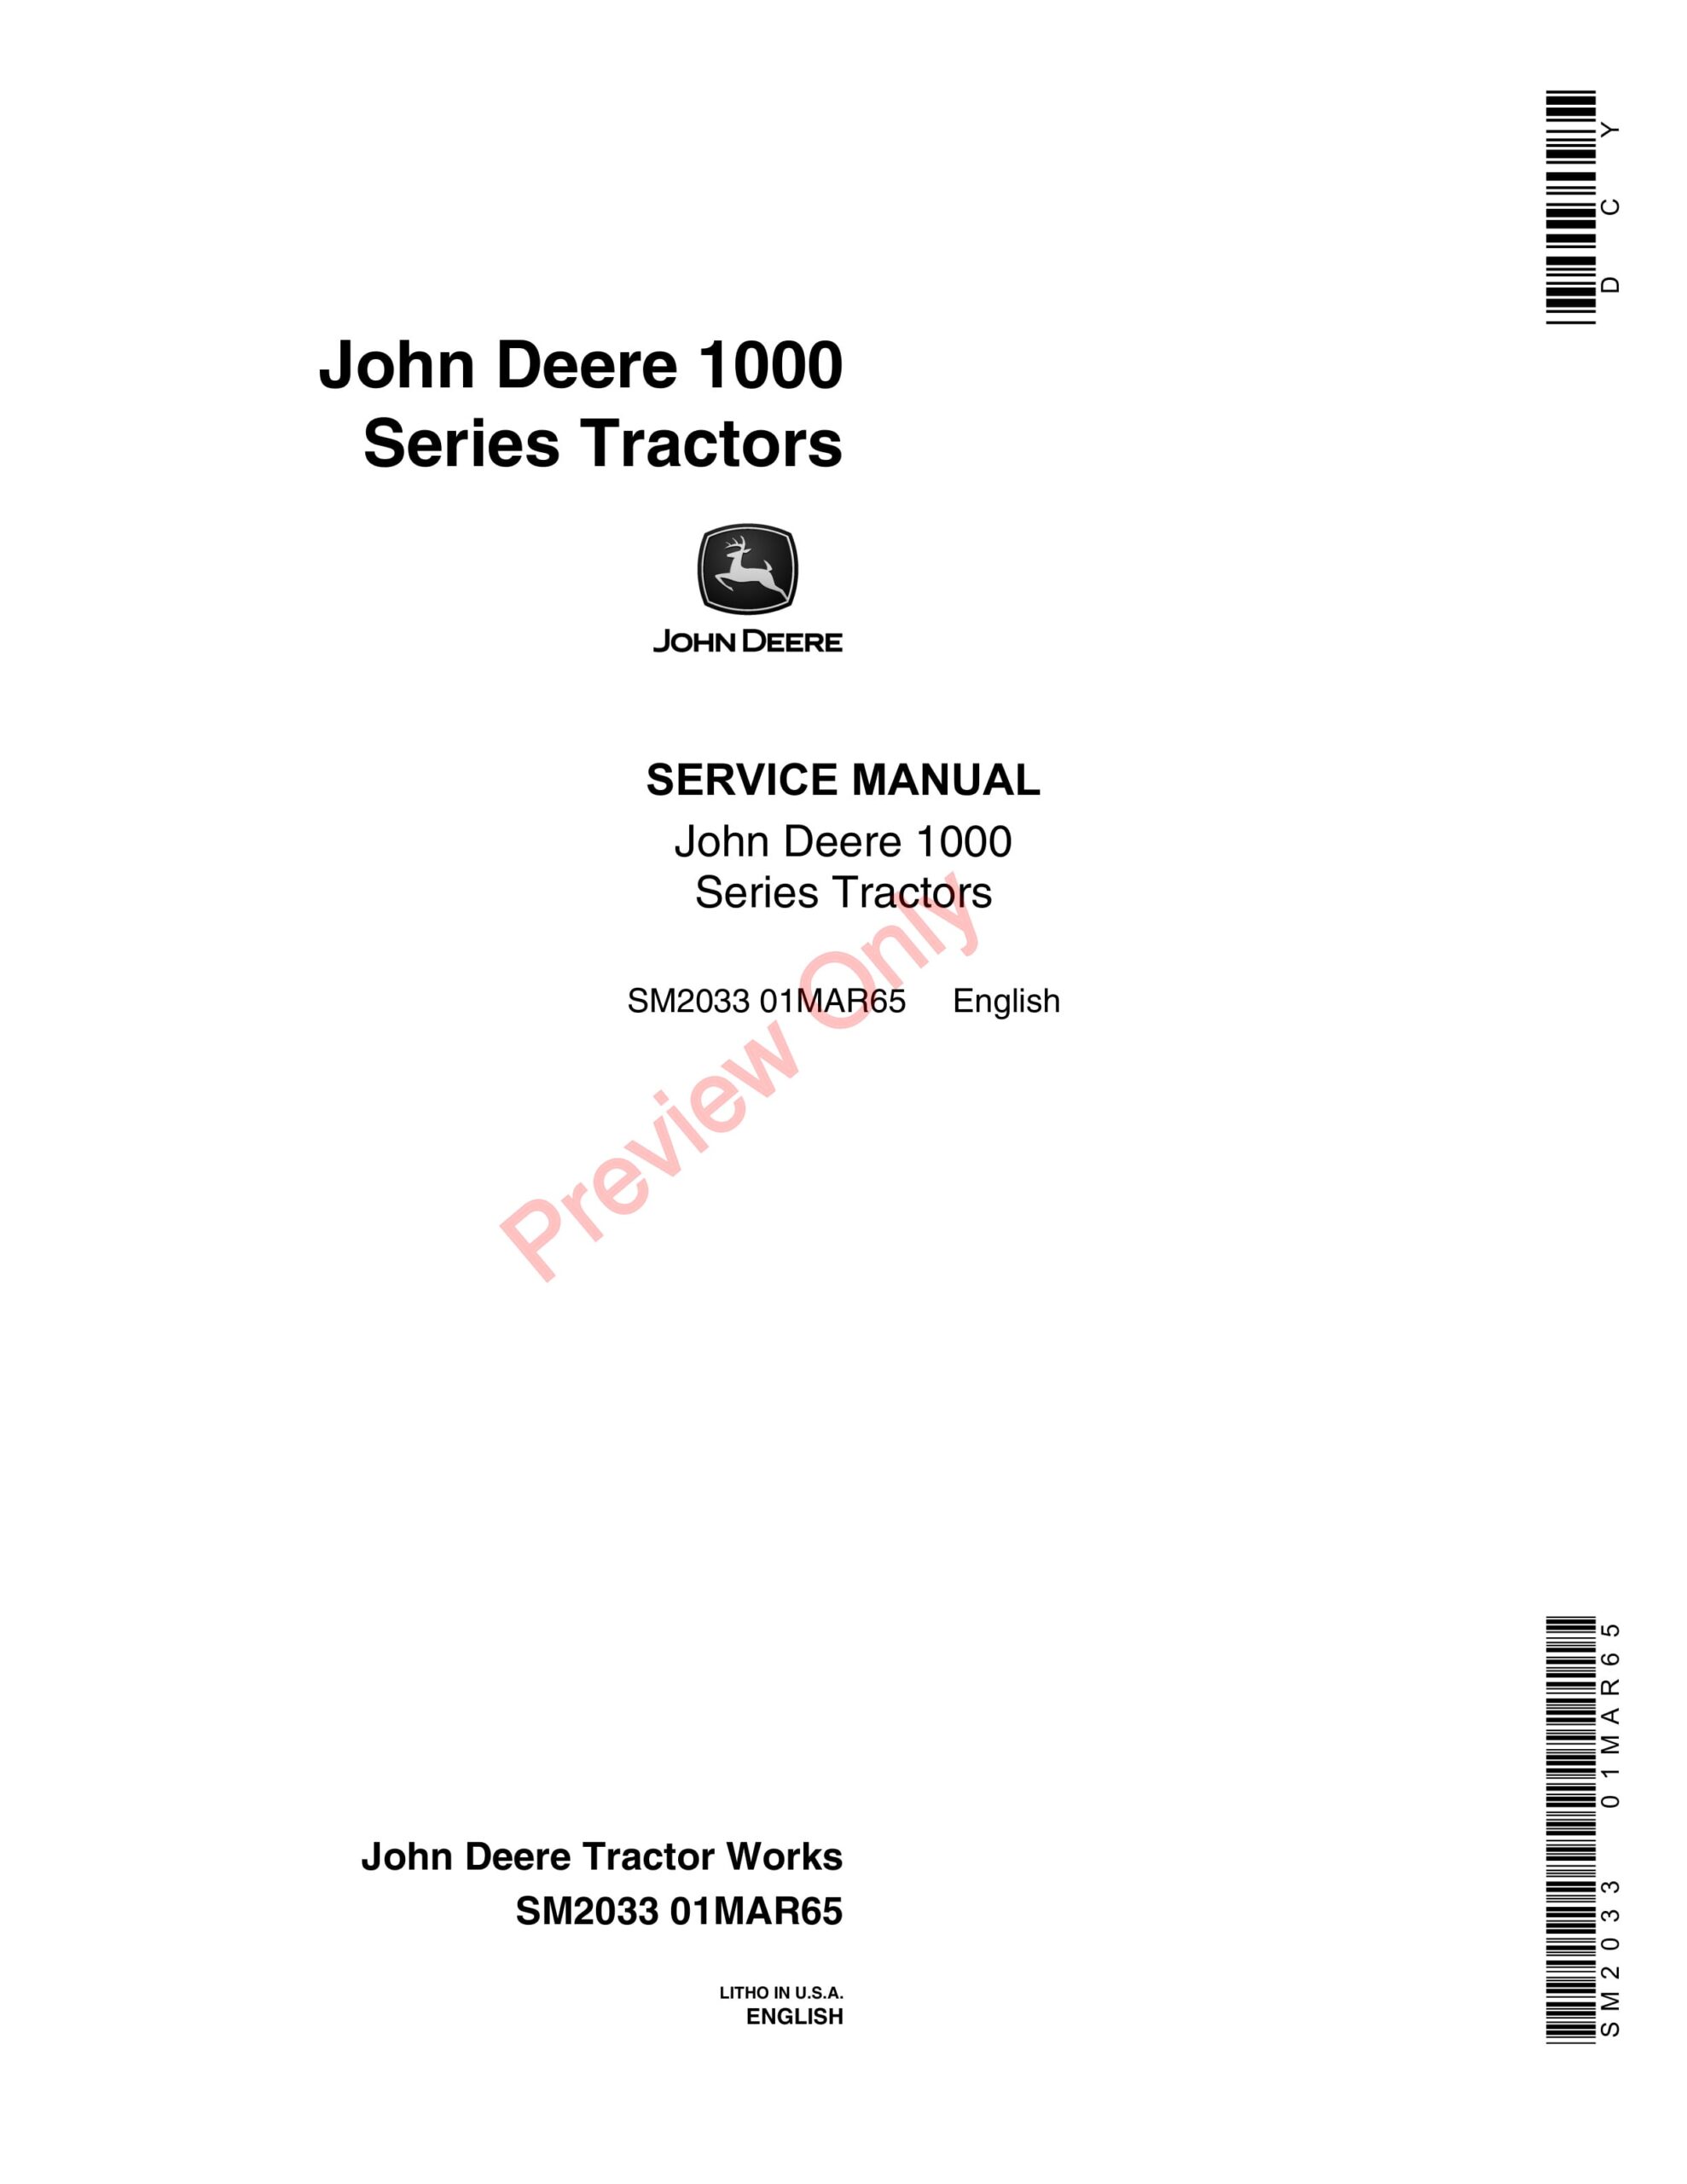 John Deere 1000 Series Tractors Service Manual SM2033 01MAR65-1